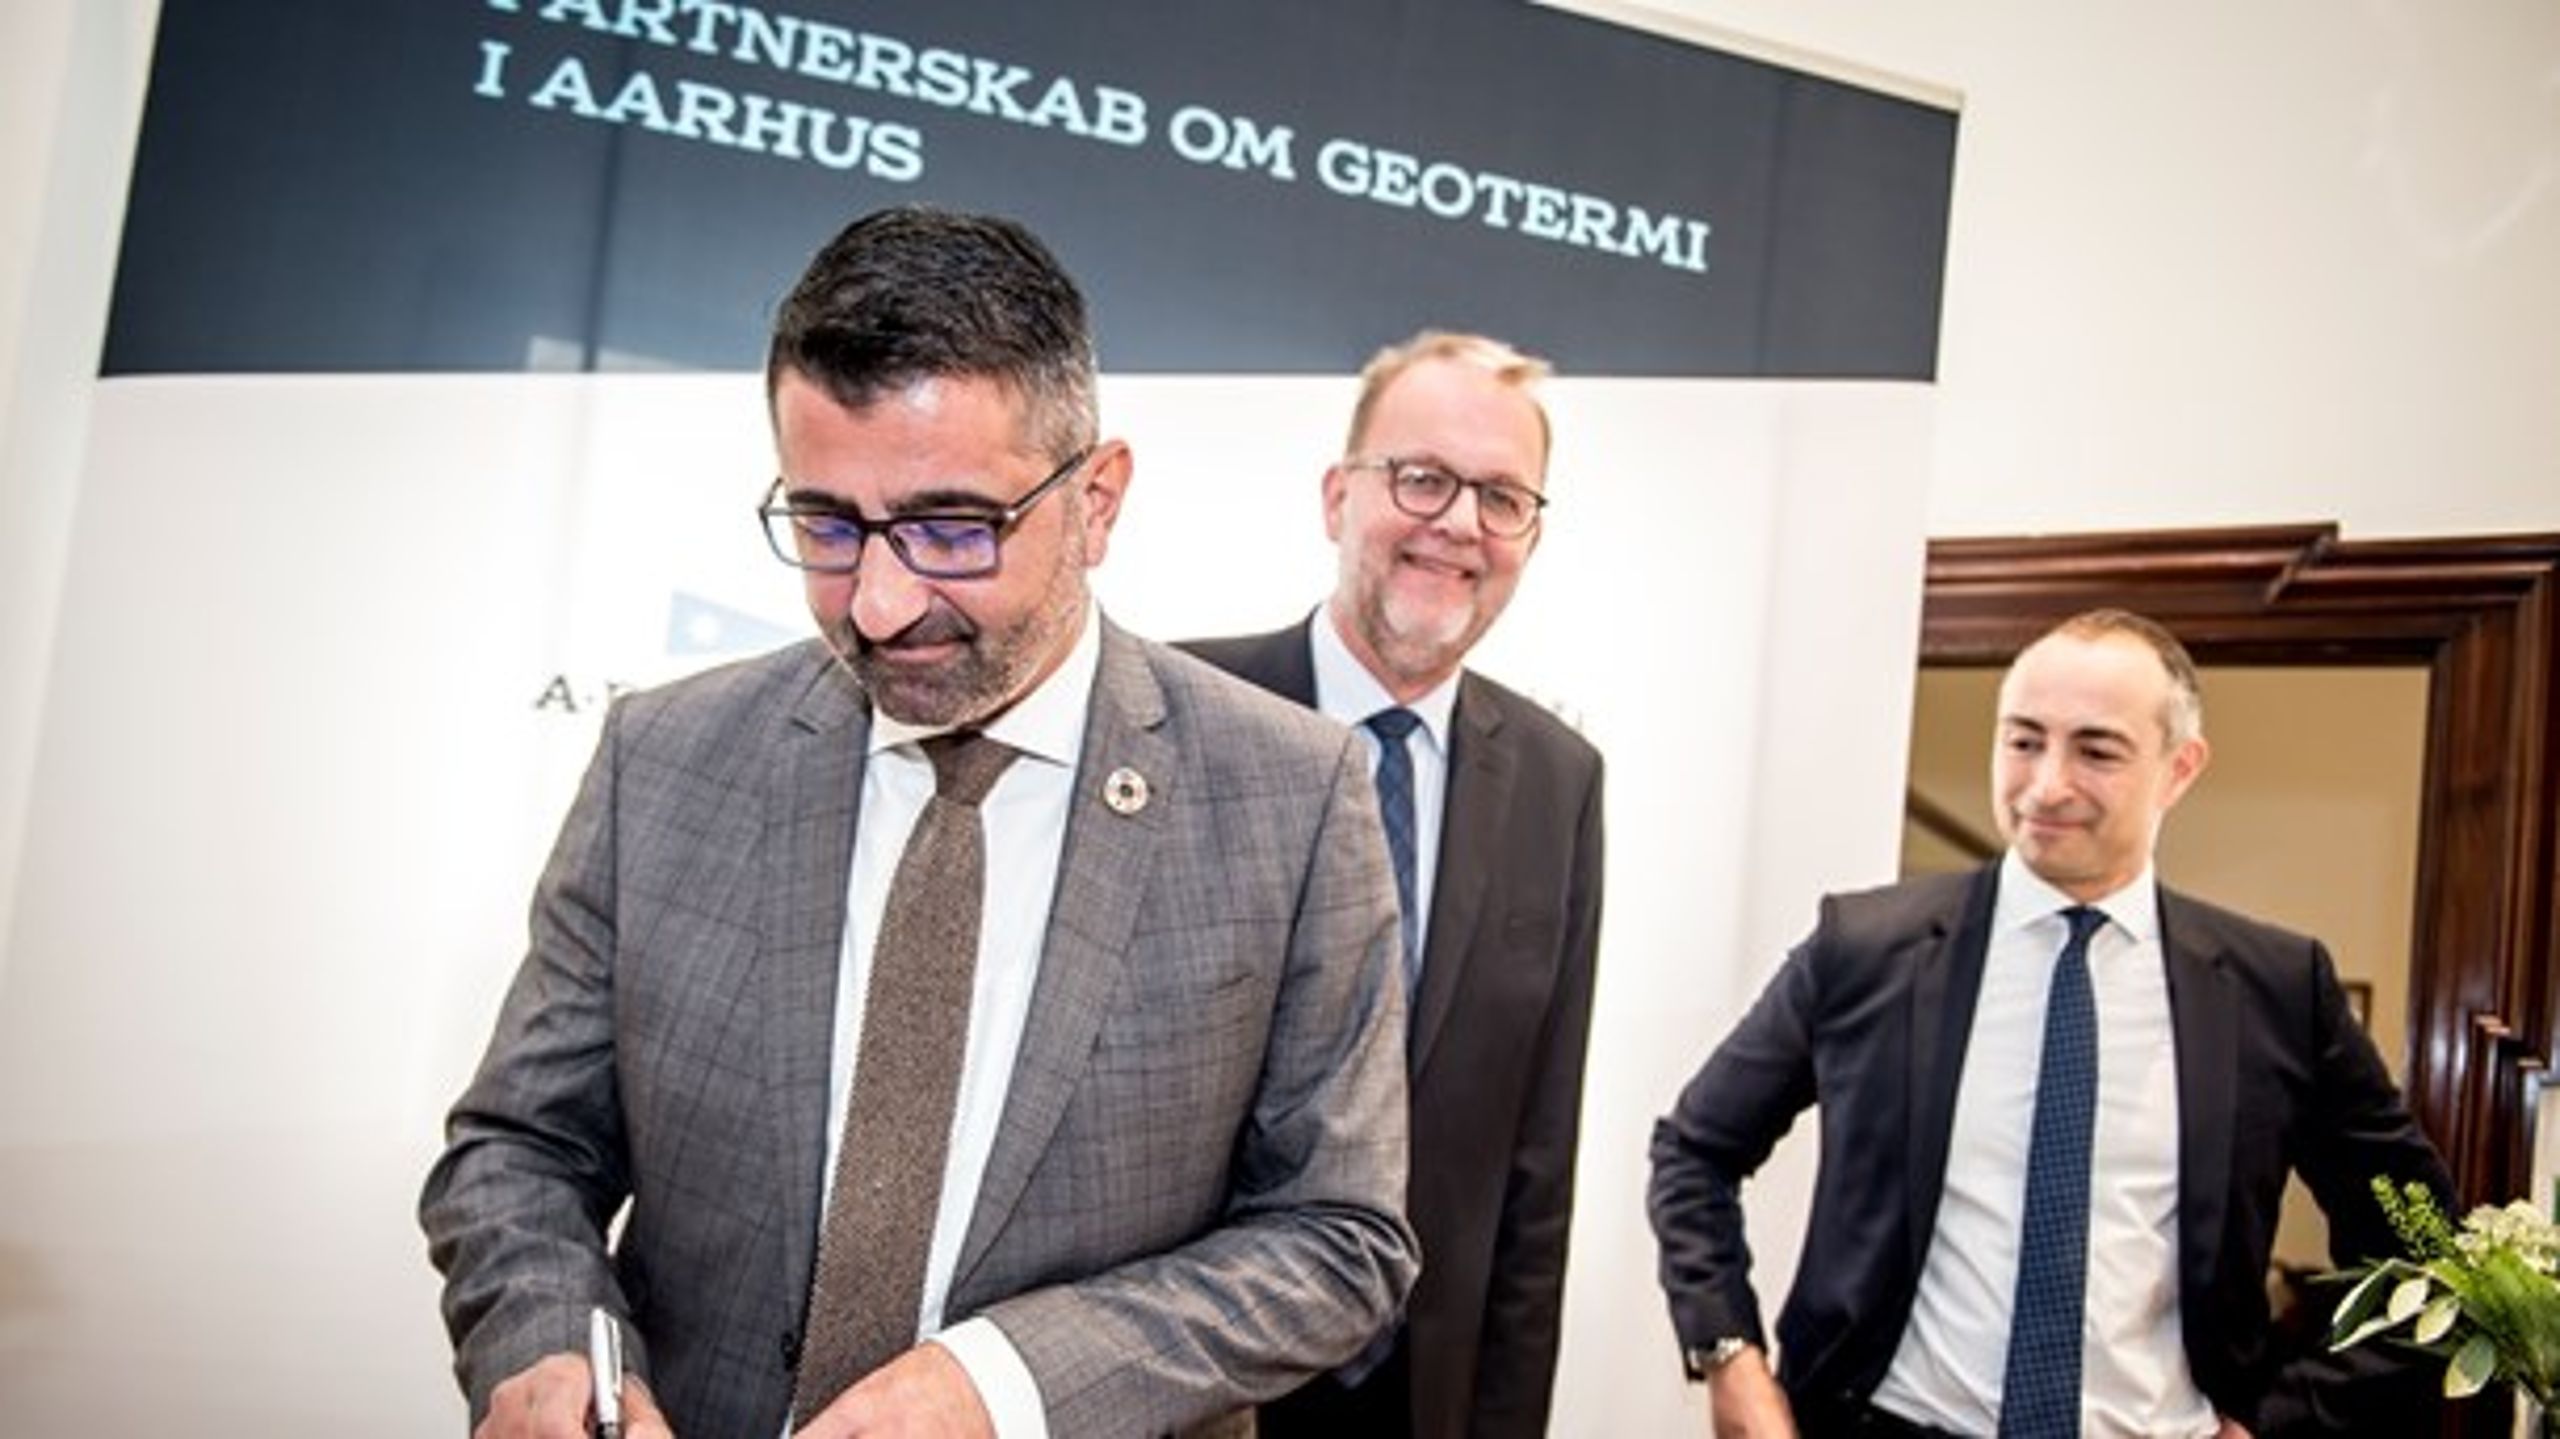 Aarhus forhandler med A.P. Møller Holding om en mulig leverance af geotermisk energi til fjernvarmen.